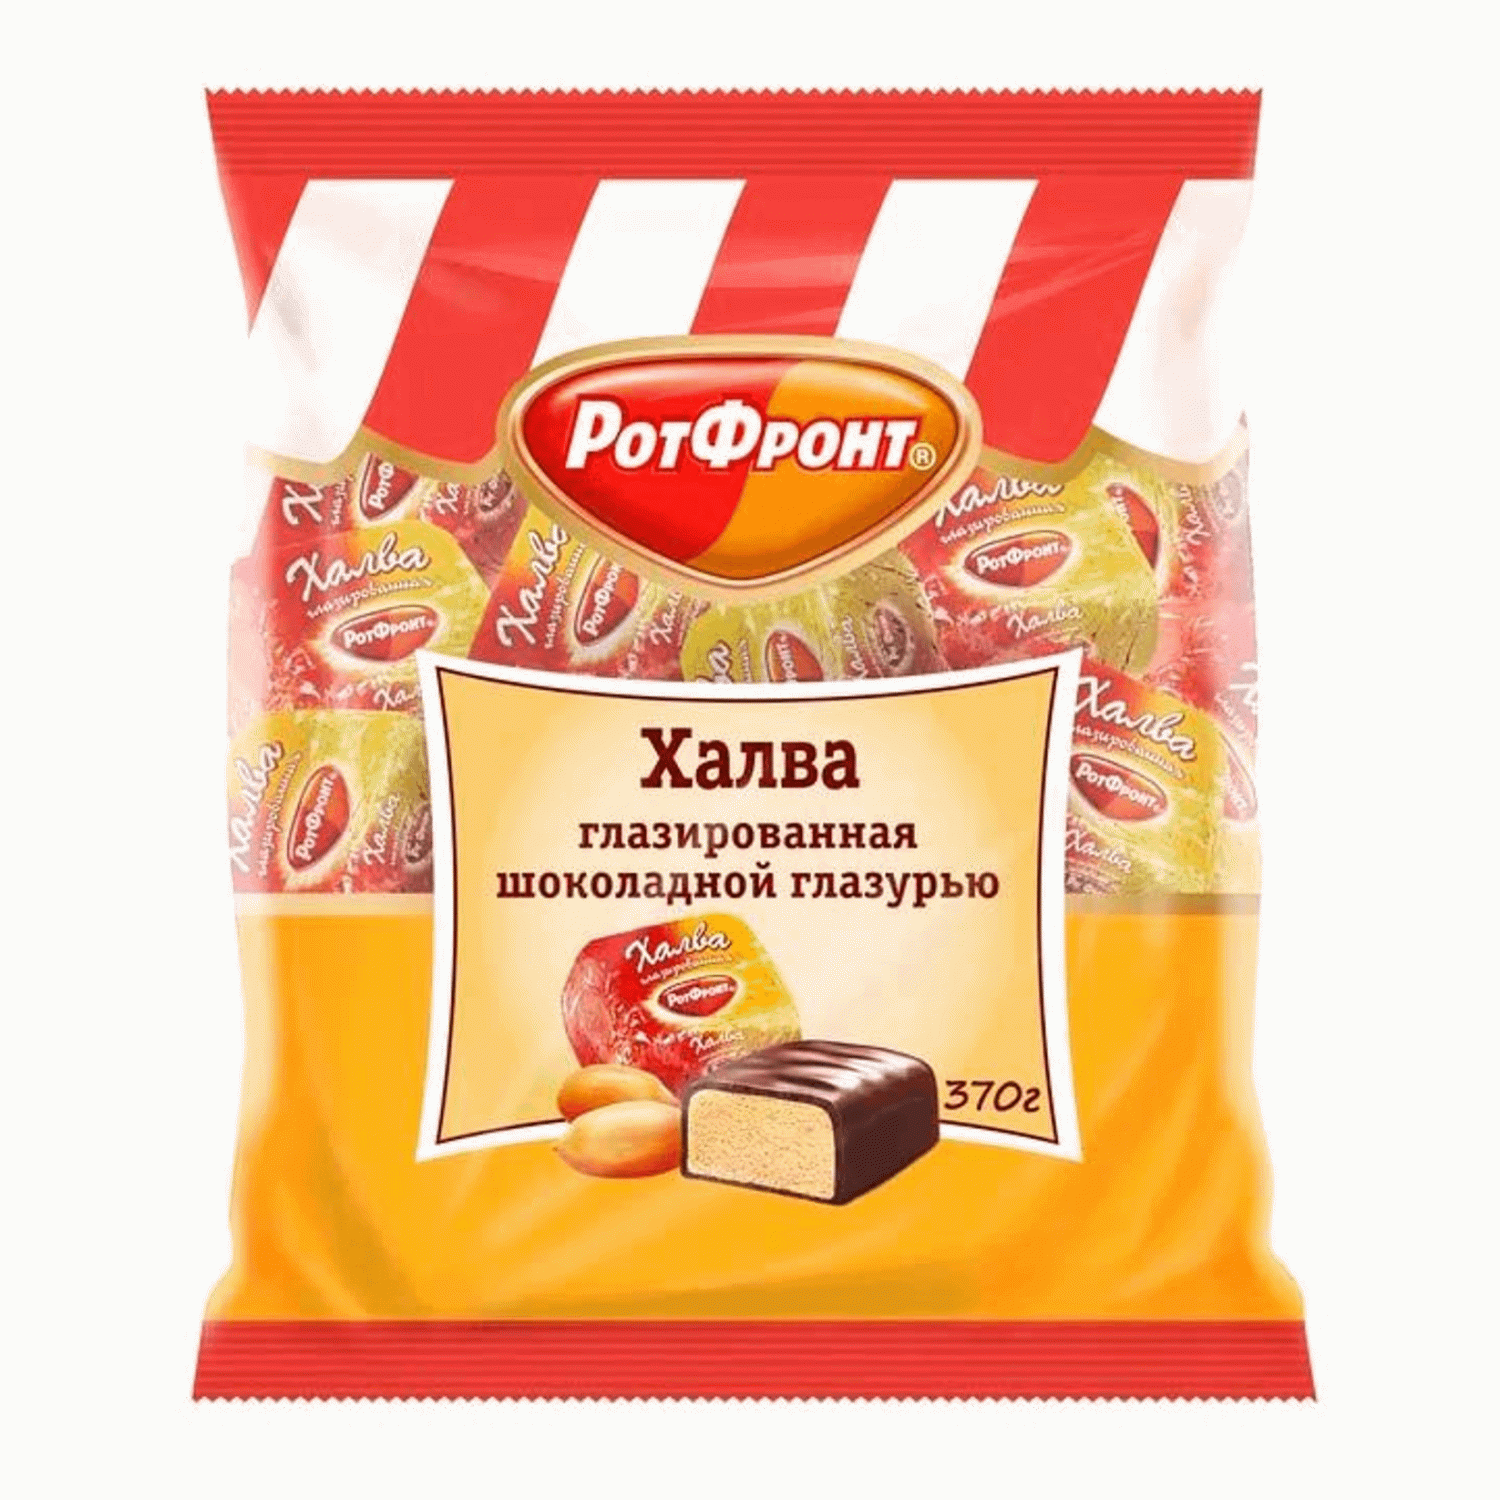 Восточные сладости Рот Фронт - купить в Москве - Мегамаркет